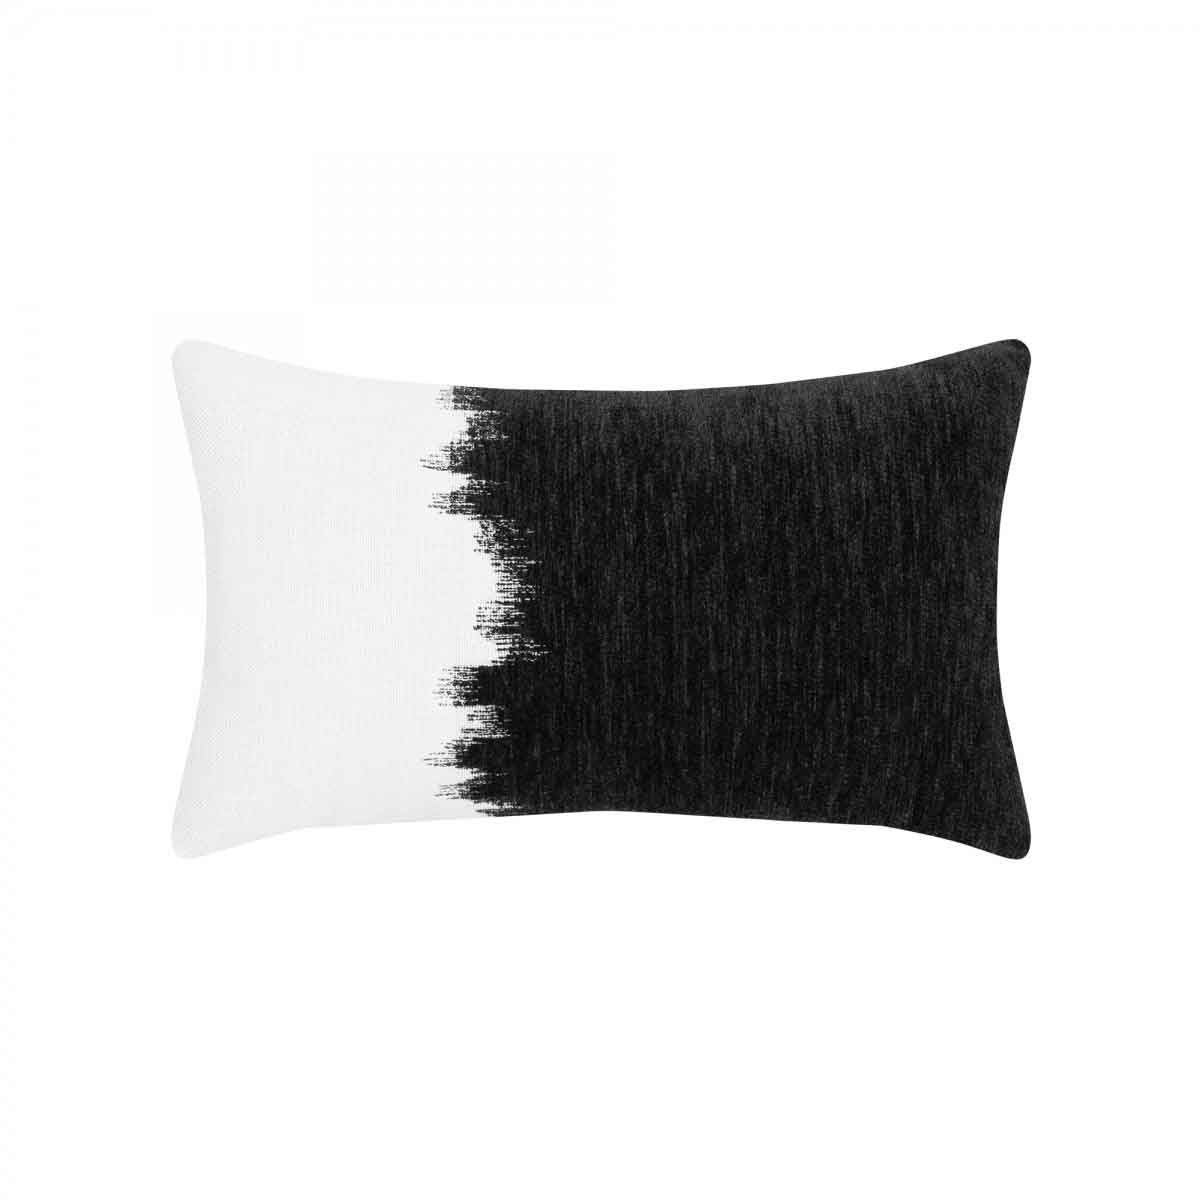 Transition Charcoal Lumbar Pillow